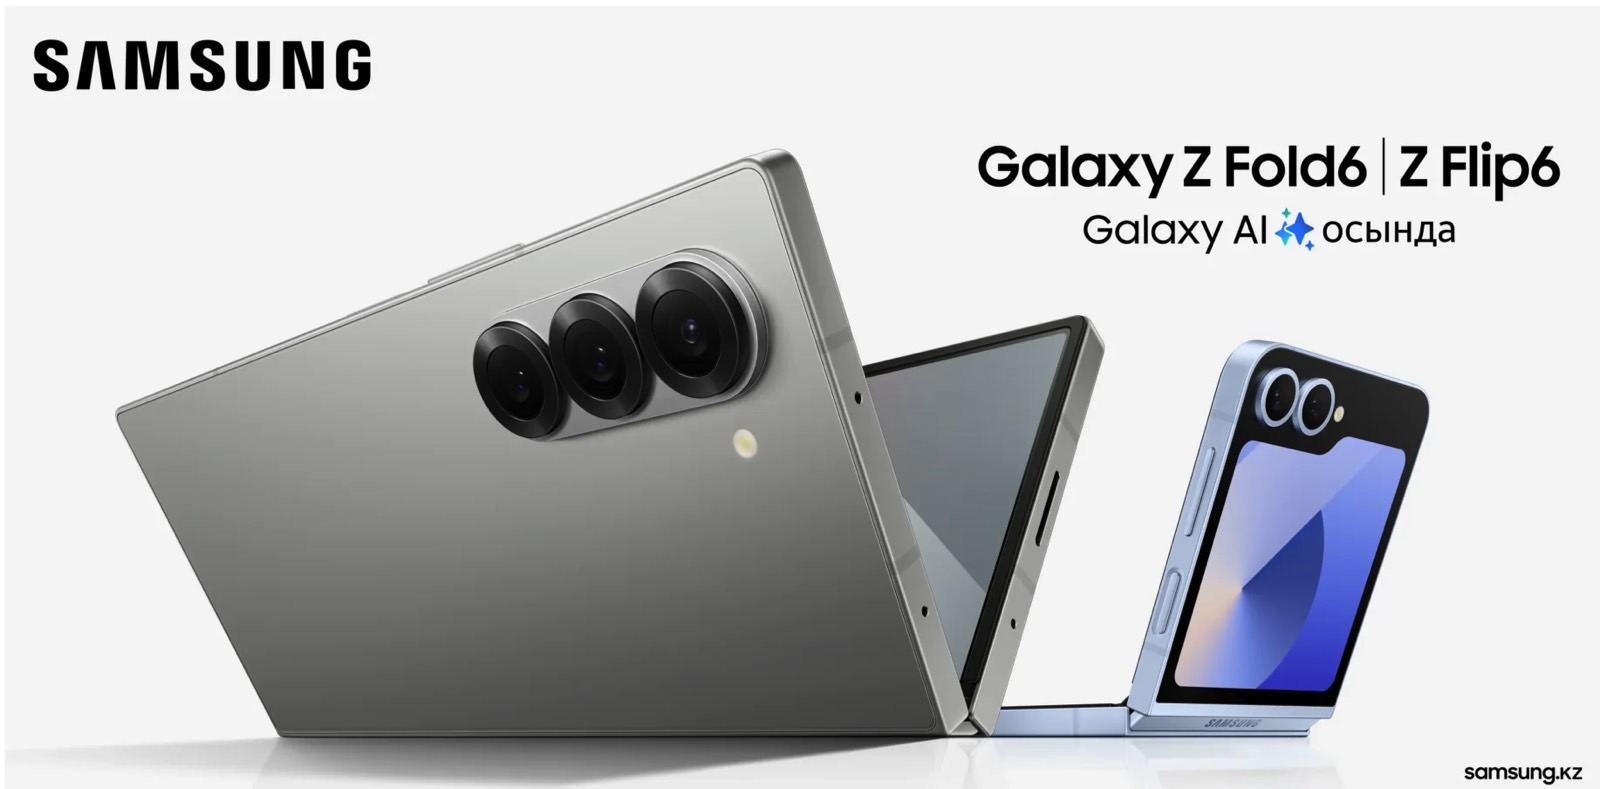 Samsung a divulgué les modèles Galaxy Z Fold 6 et Flip 6 dans une publicité Galaxy AI.